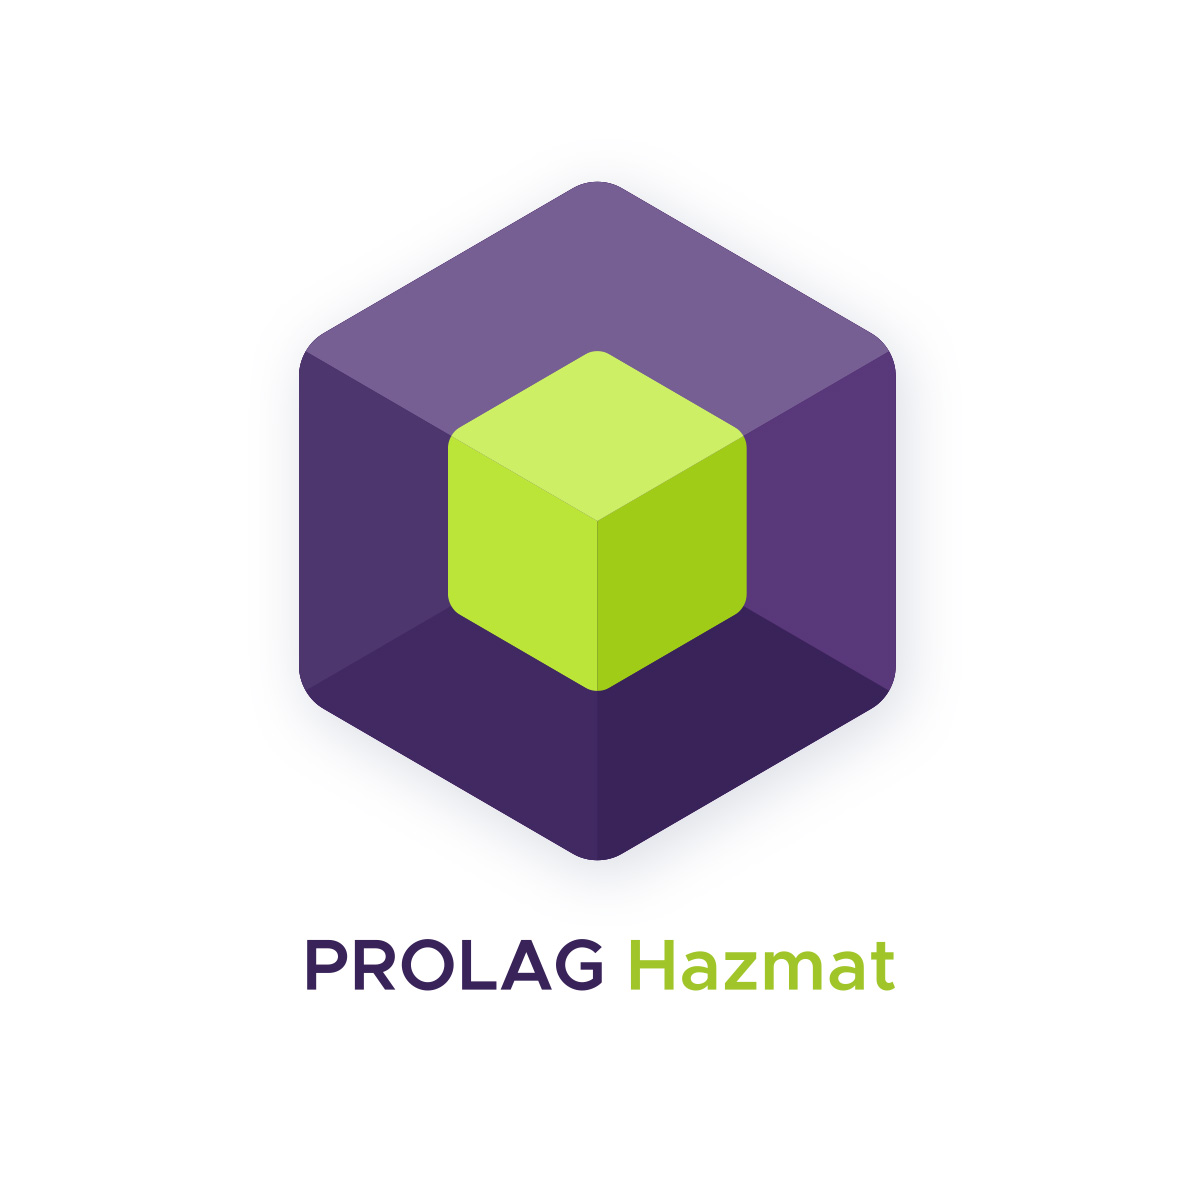 PROLAG Hazmat - Die Lösung zur Verwaltung von Gefahrstoffen und Gefahrgut